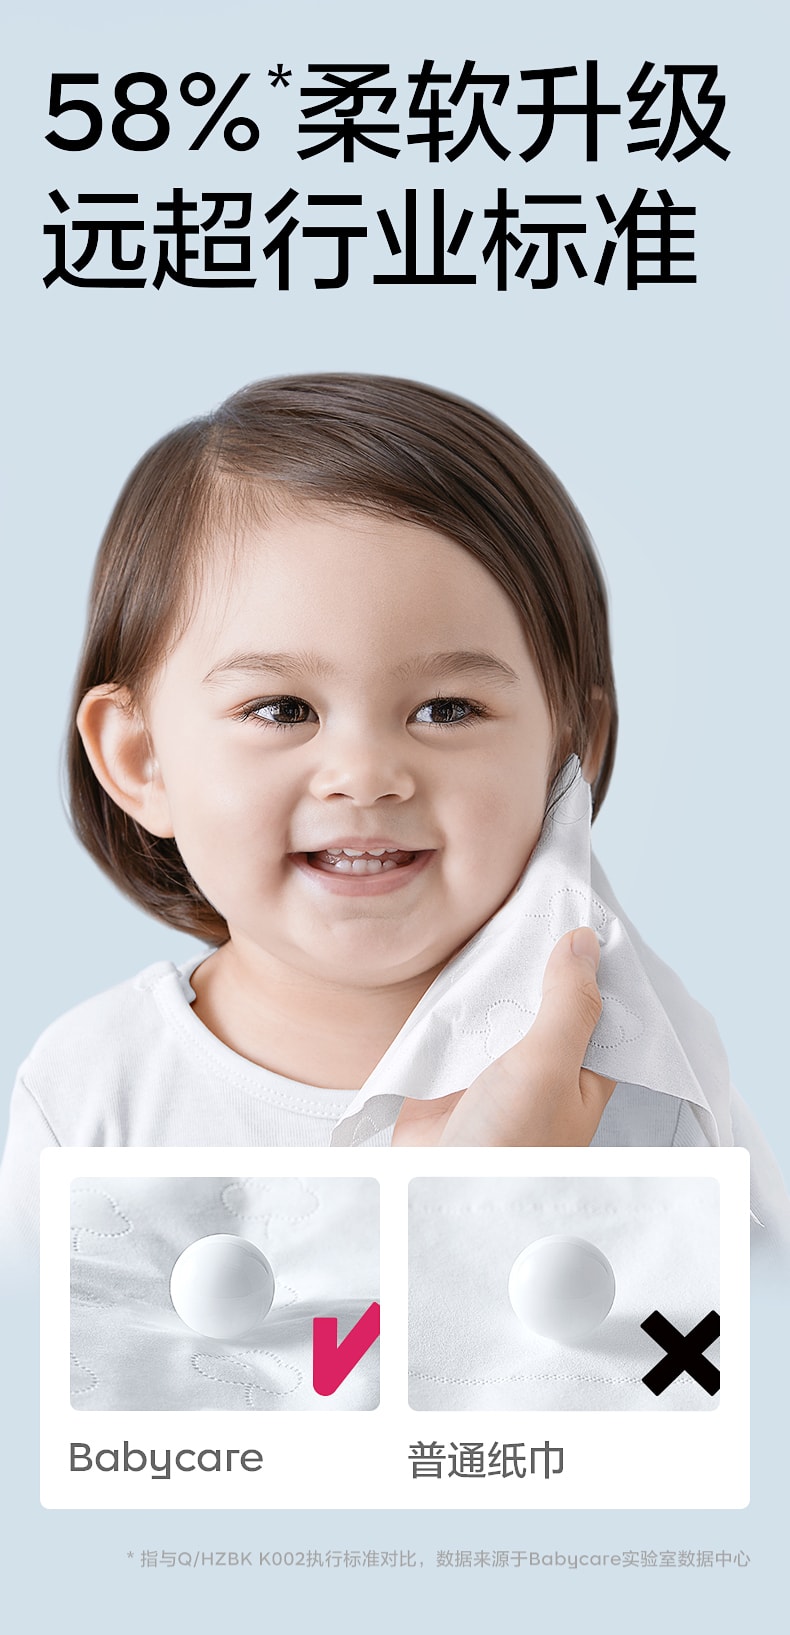 【中国直邮】BC BABYCARE 137mm*190mm 80抽/包抽取式保湿纸巾 熊柔巾婴儿保湿纸巾便携